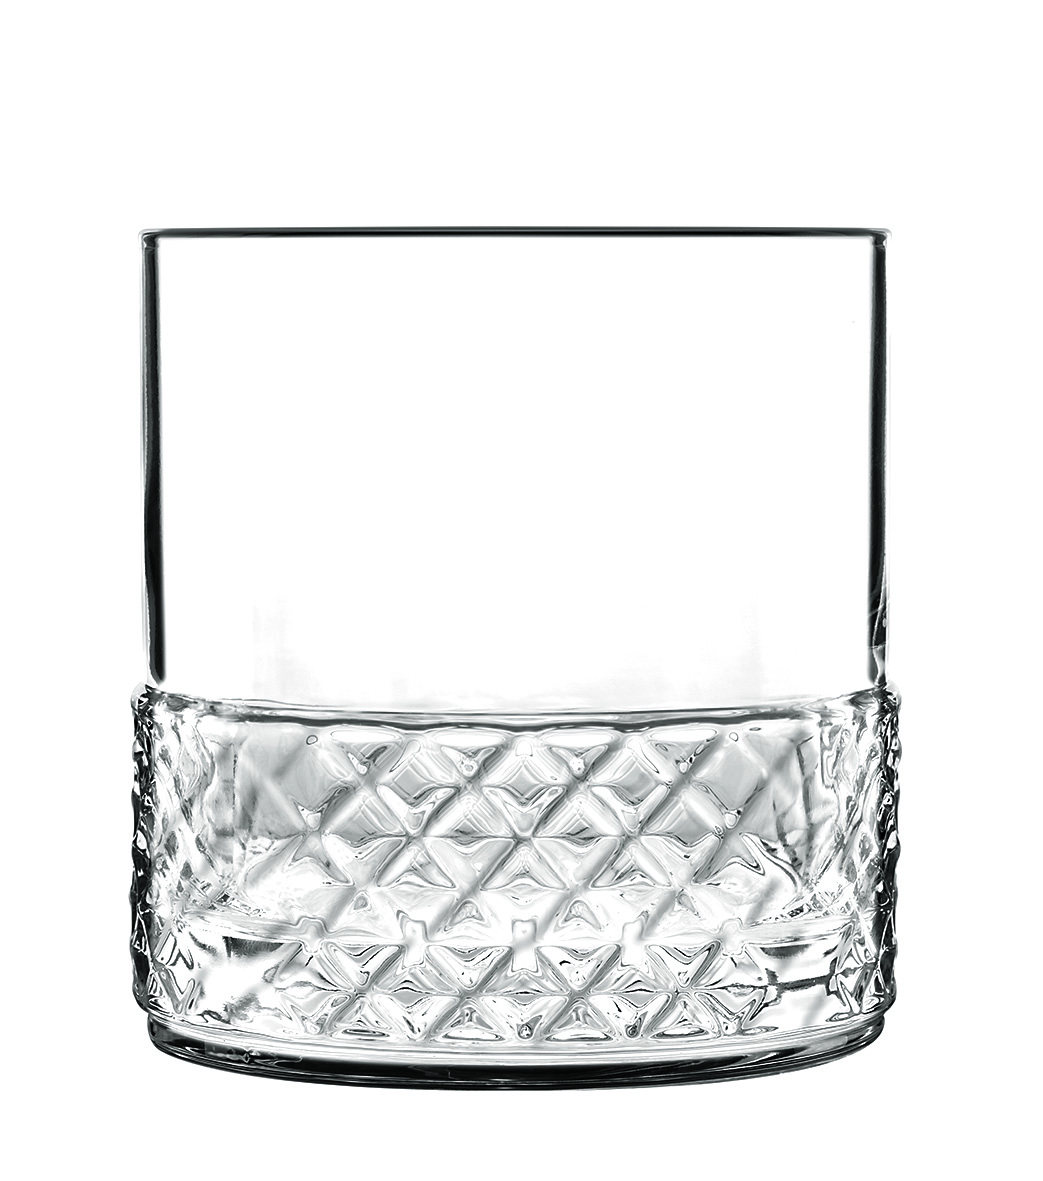 Wasserglas, leer, Serie Roma 1960, unterer Glasrand strukturiert, 300 ml